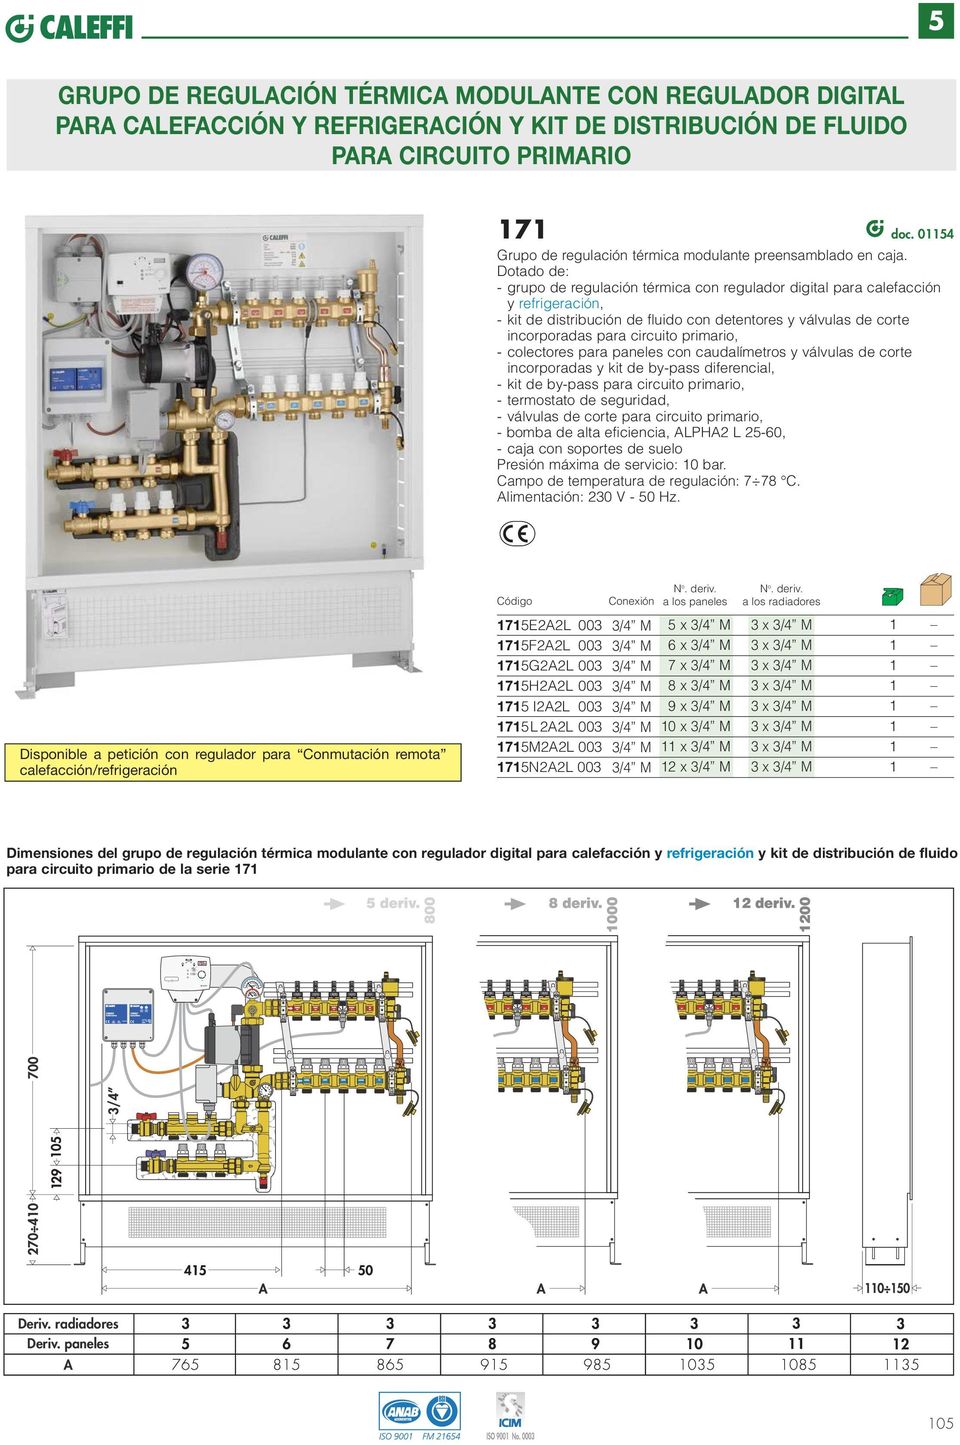 Dotado de: - grupo de regulación térmica con regulador digital para calefacción y refrigeración, - kit de distribución de fluido con detentores y válvulas de corte incorporadas para circuito